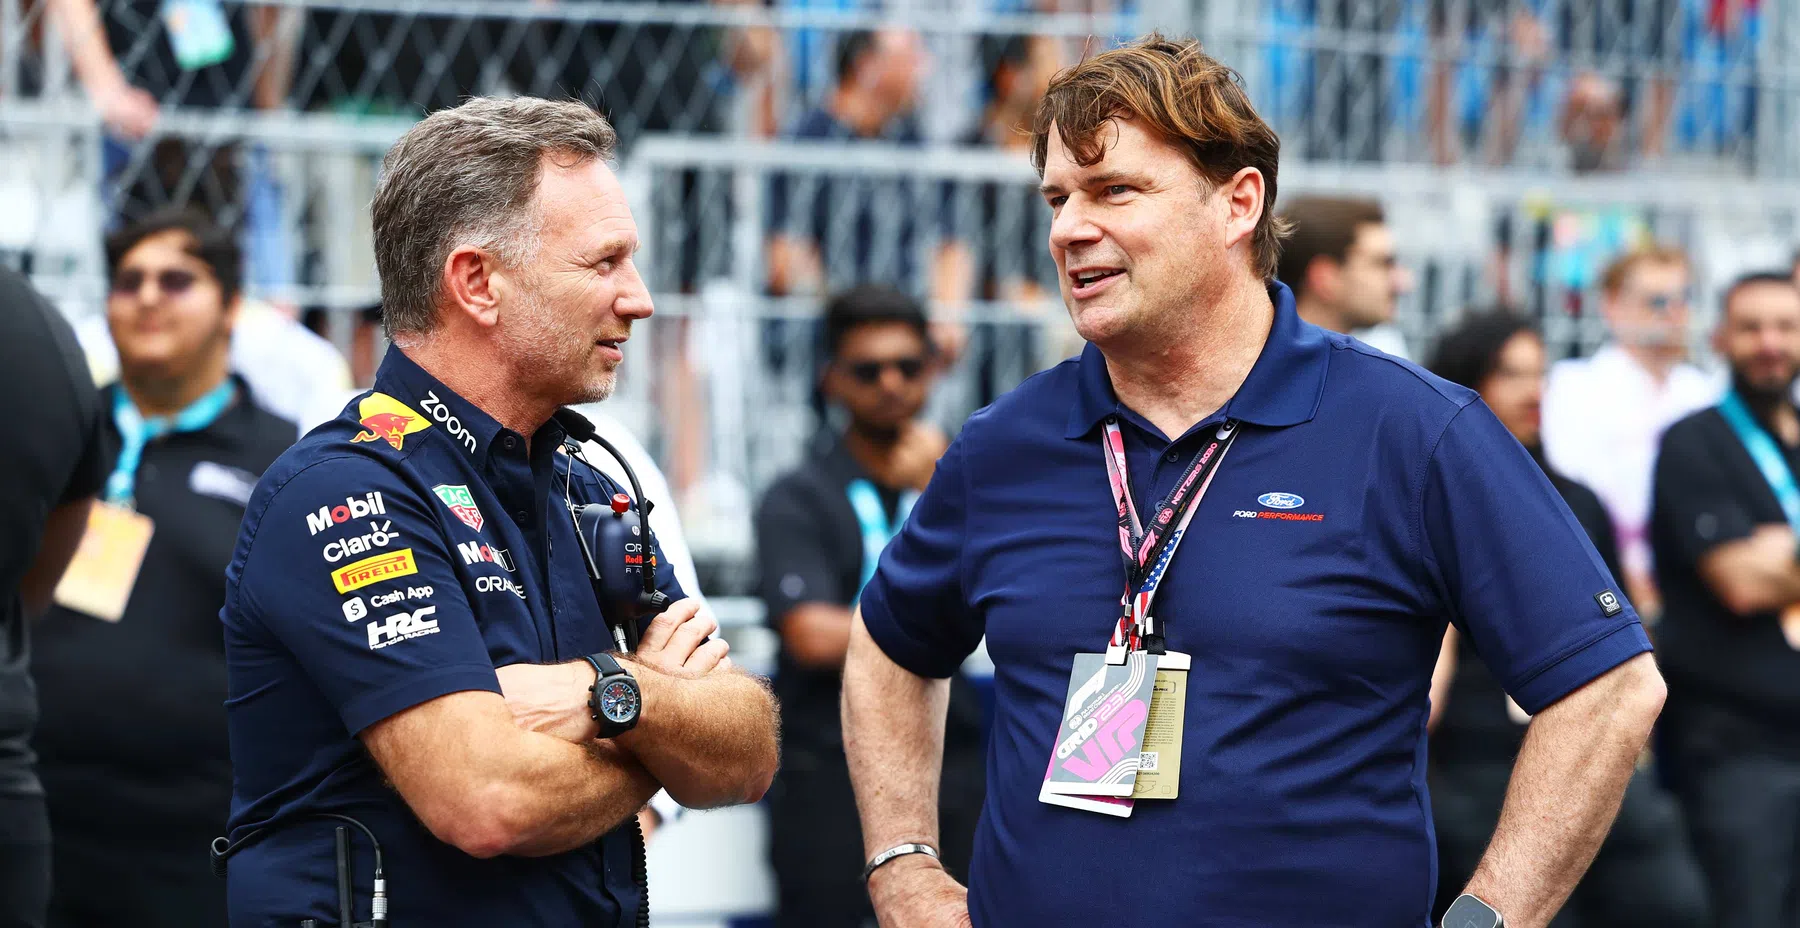 Ford weigert sich, die Aussage von Red Bull zu kommentieren Christian Horner